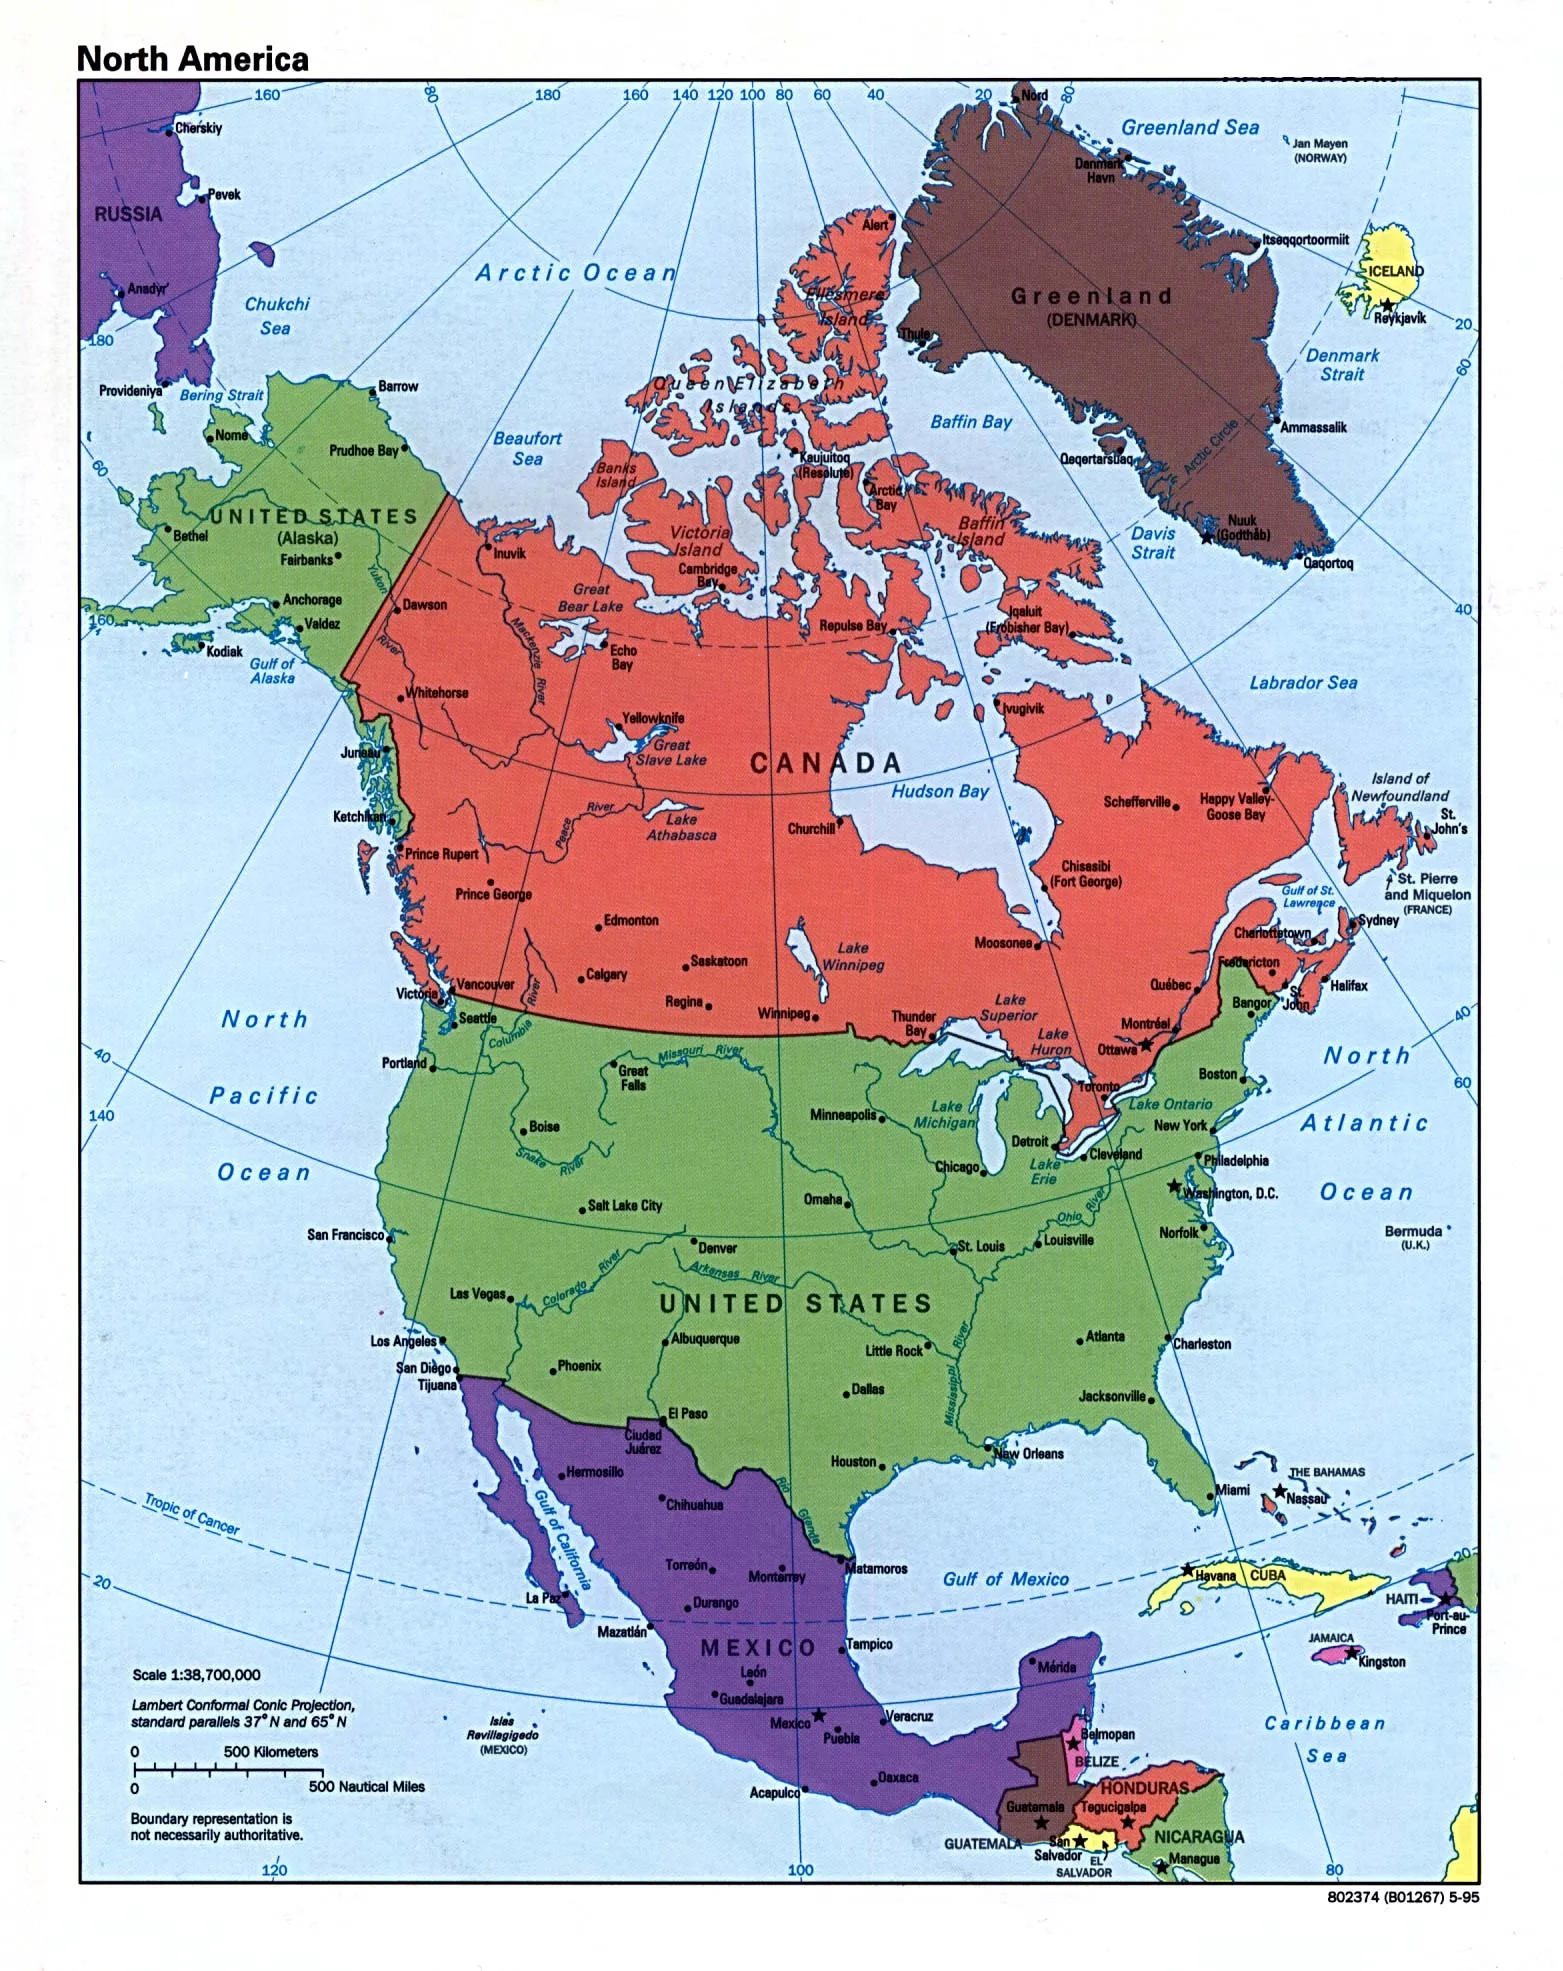 Mapa Político de América del Norte 1995 - Tamaño completo